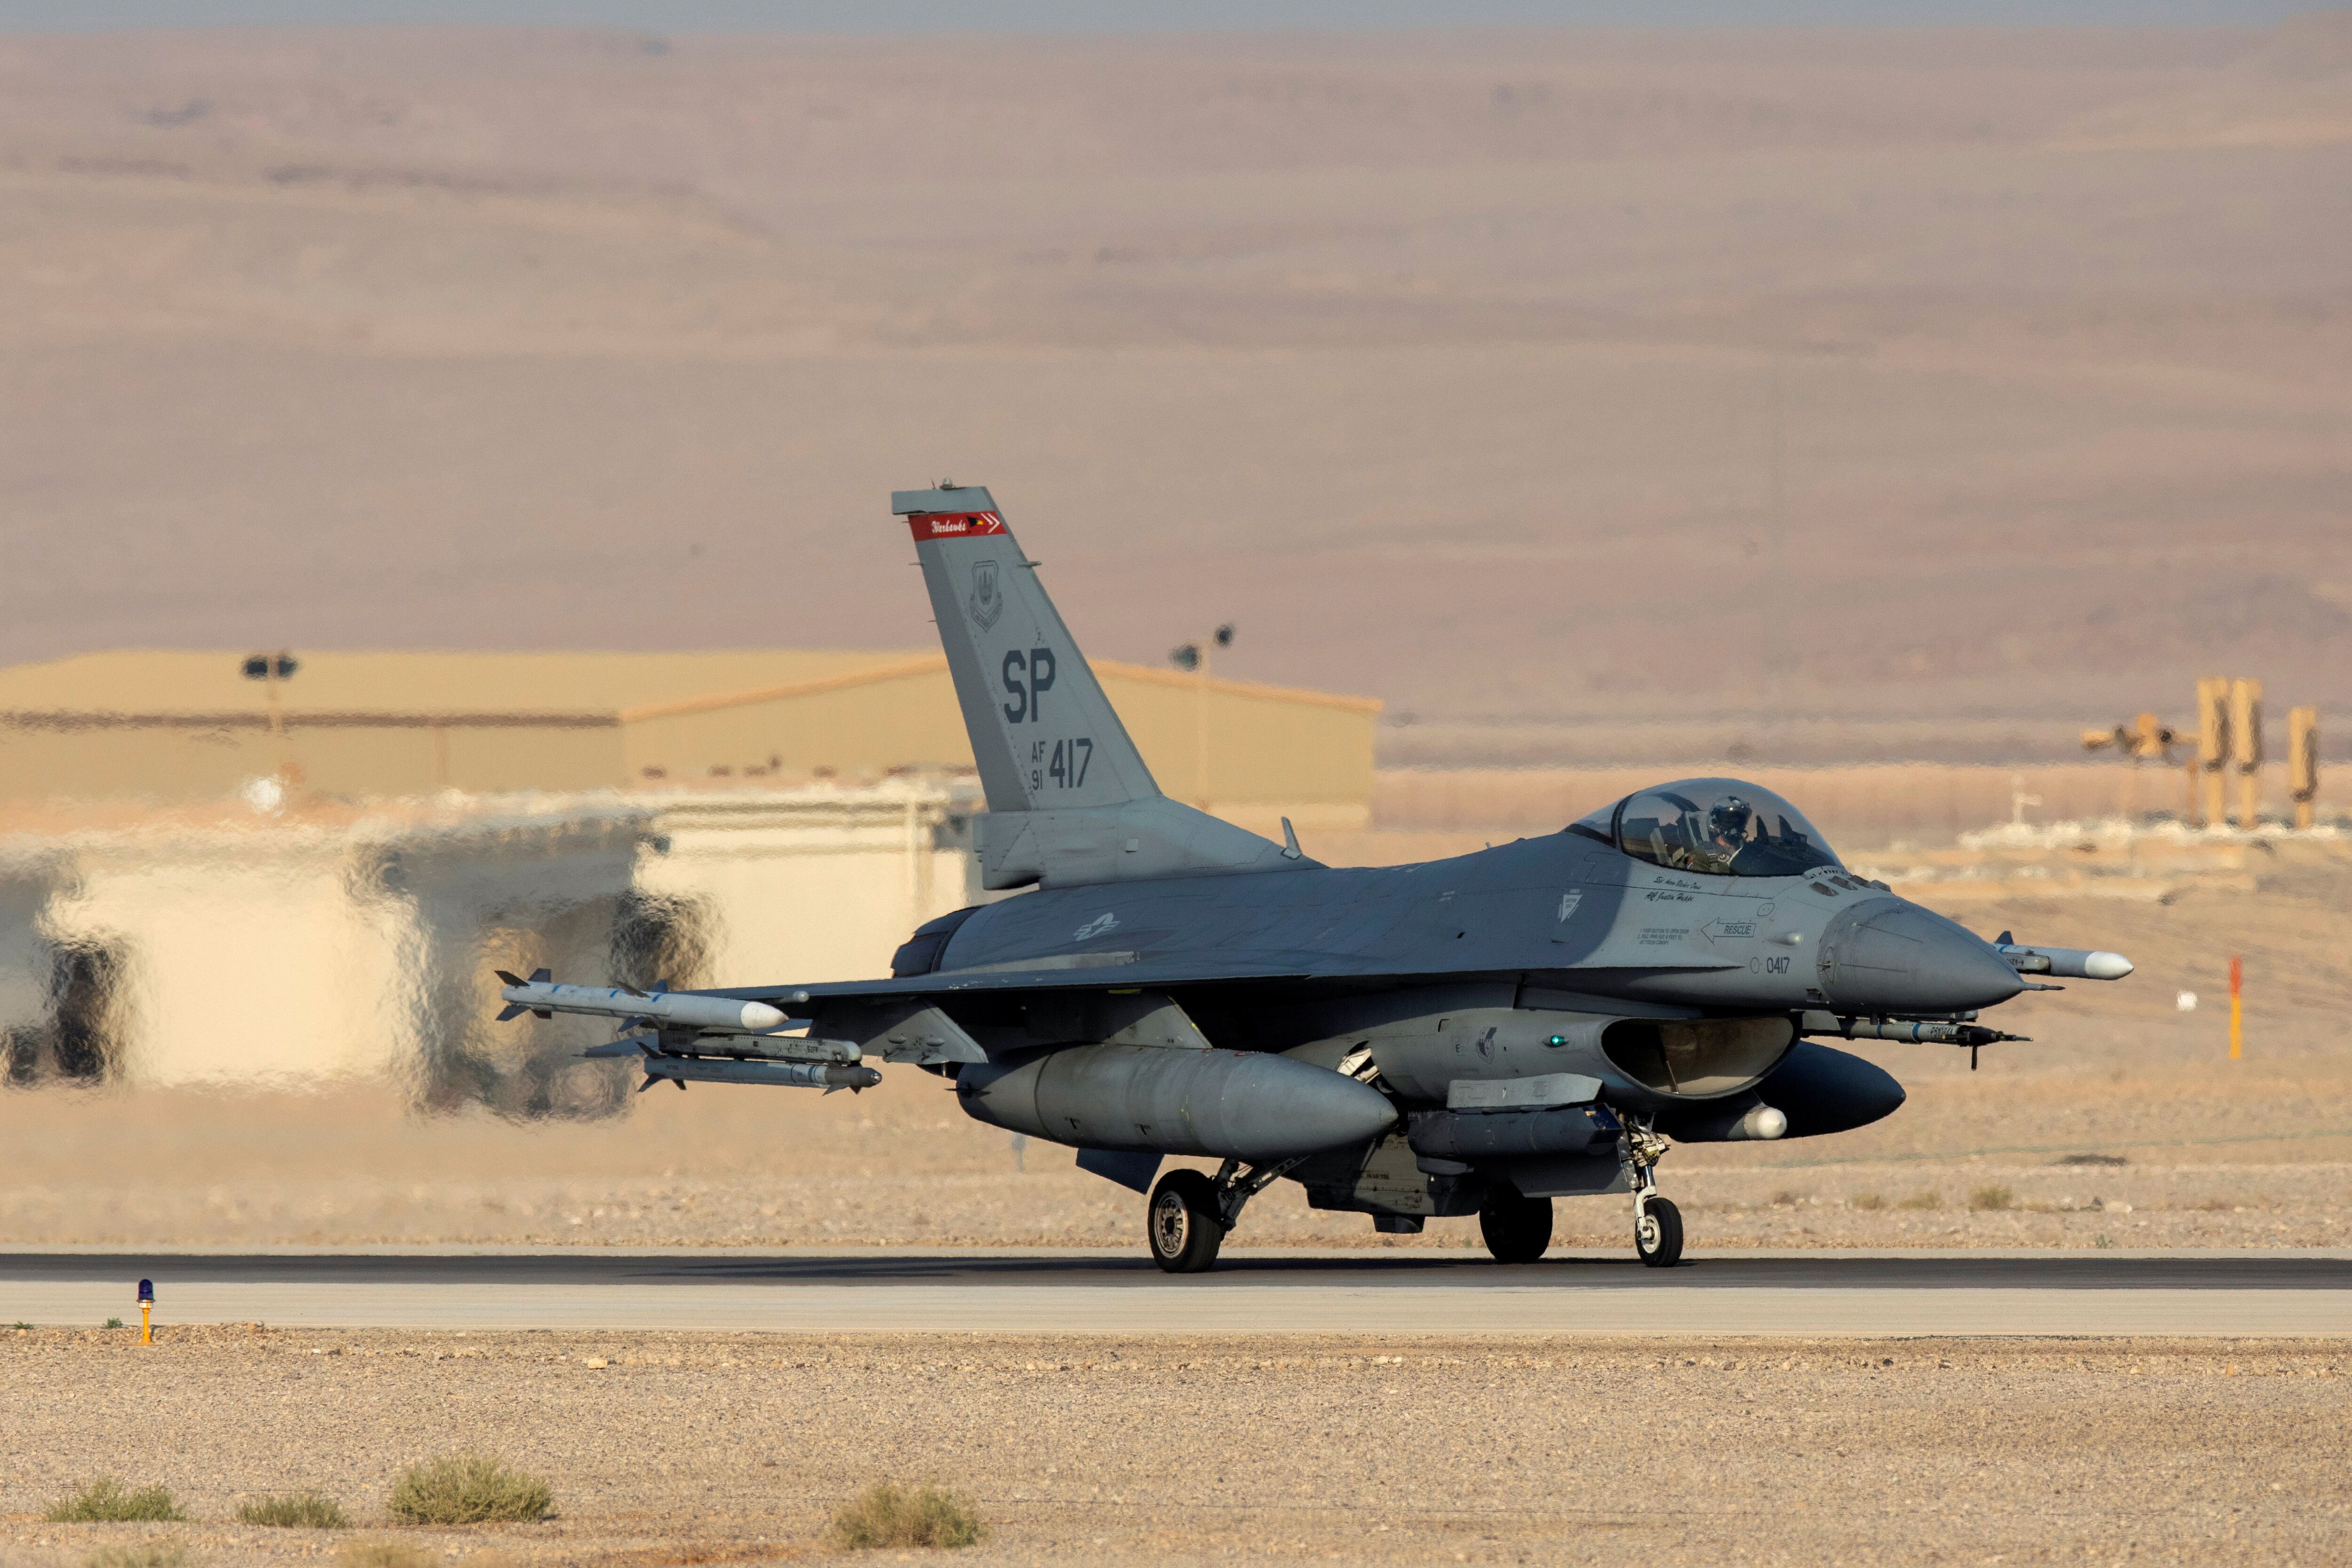 Un avión F16 estadounidense se ve en la pista durante un ejercicio aéreo, en noviembre de 2019 (Reuters)